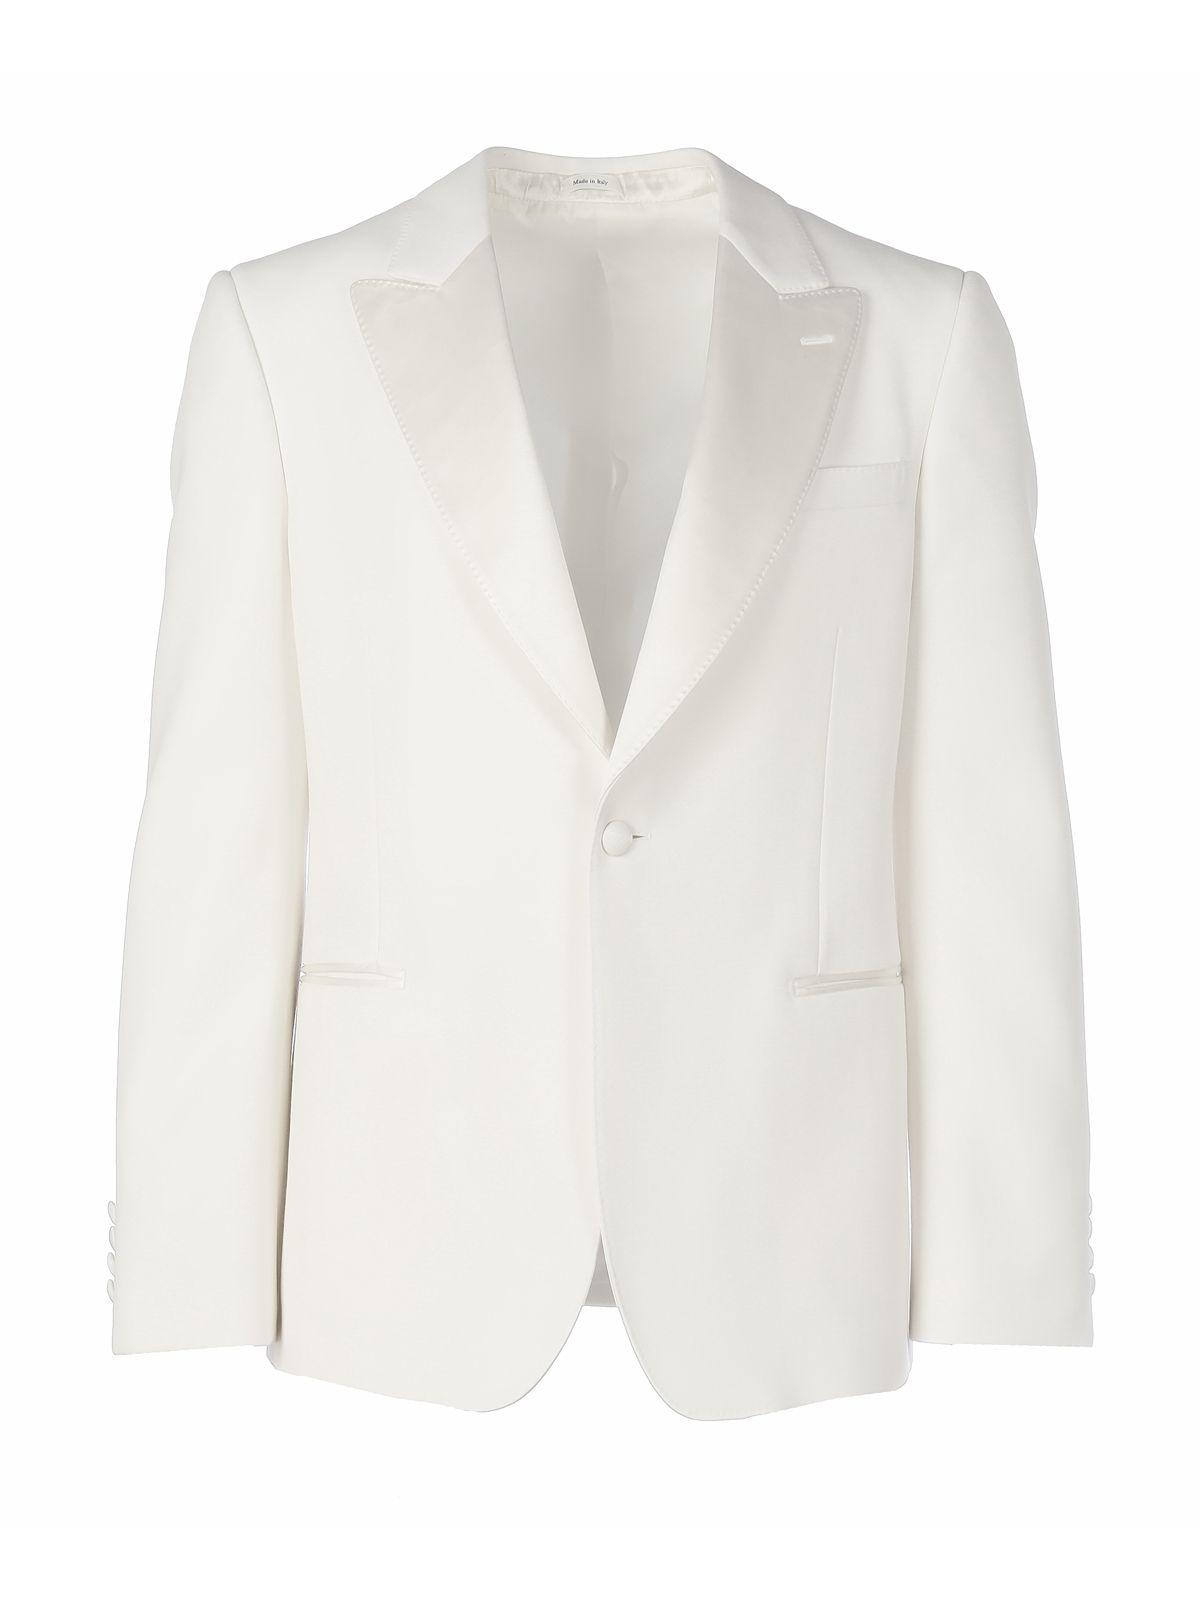 Alexander McQueen Wool Blazer in White for Men - Lyst